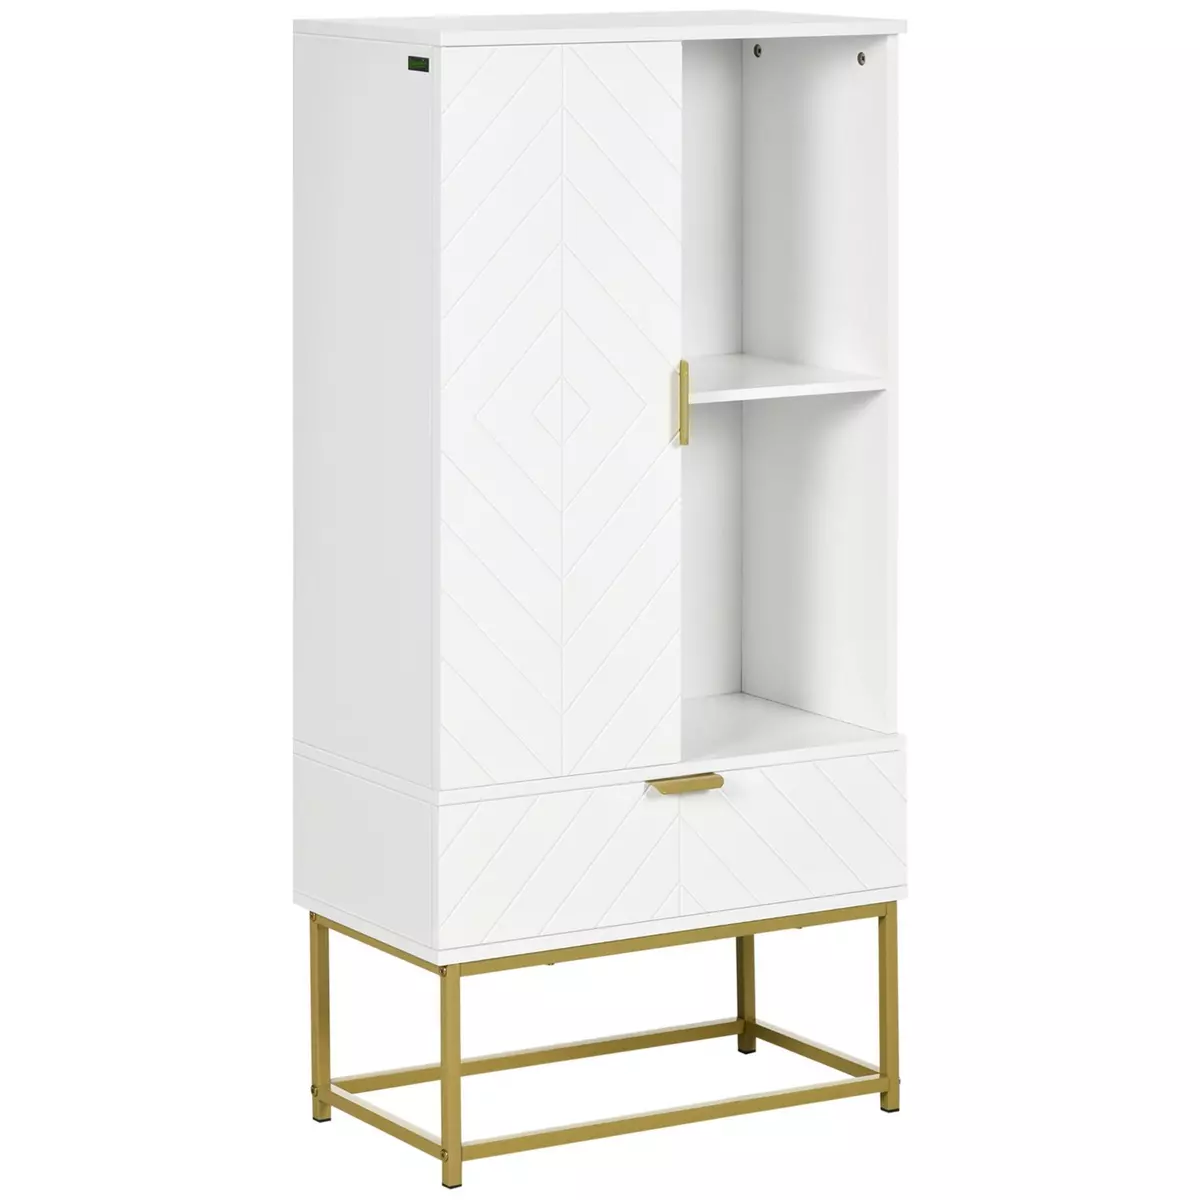 KLEANKIN Meuble bas de salle de bain design - porte, étagère, tiroir, 2 niches, 1 tiroir - acier doré MDF blanc